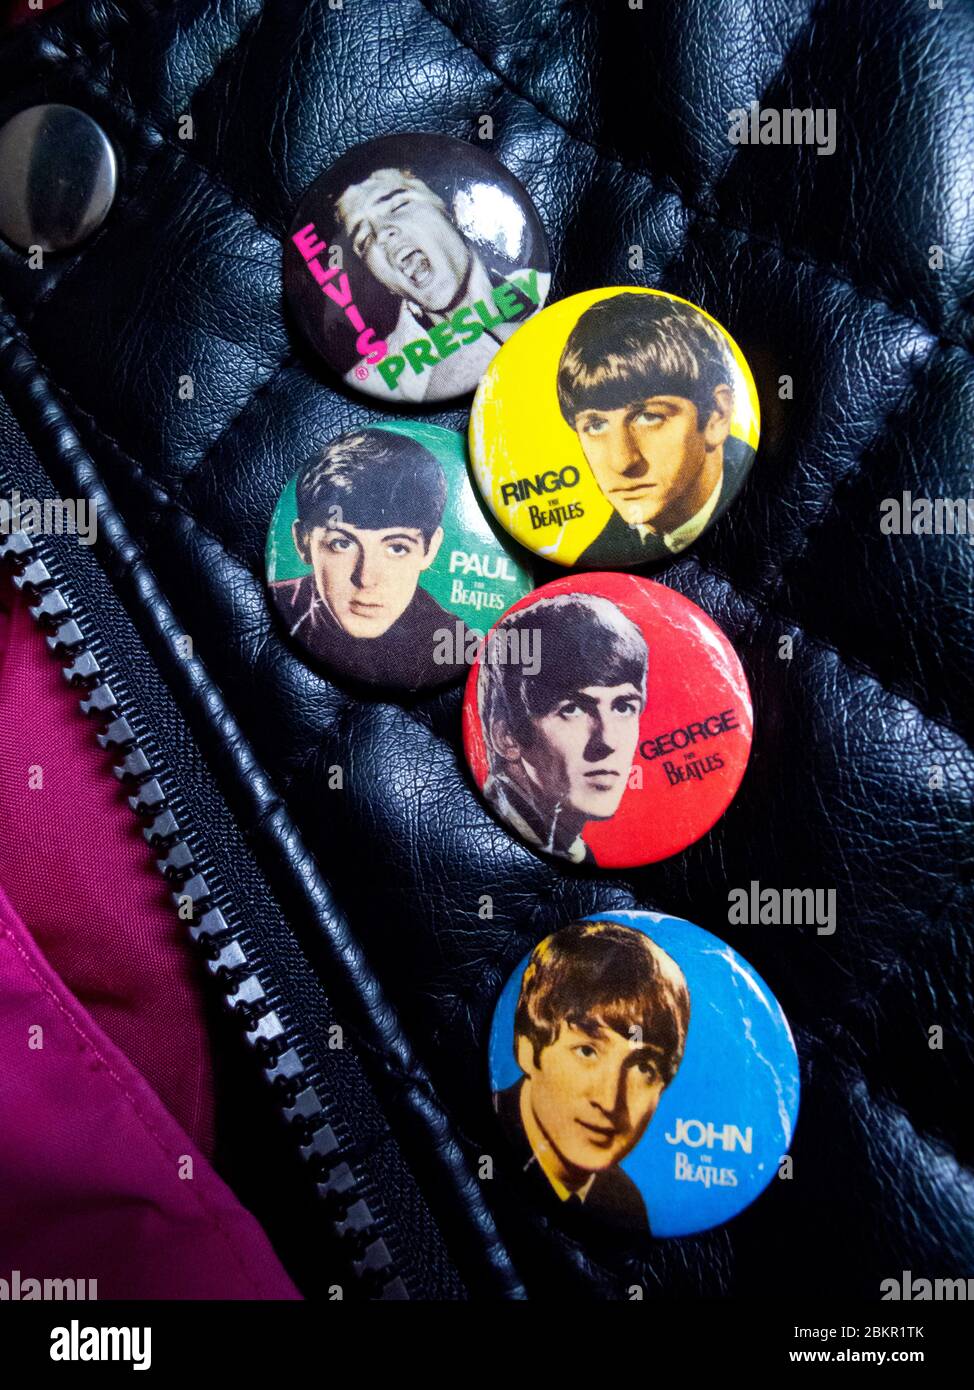 Lederjacke mit Abzeichen der Beatles John Lennon Paul McCartney George Harrison und Ringo Starr neben einem Abzeichen mit Elvis Presley. Stockfoto